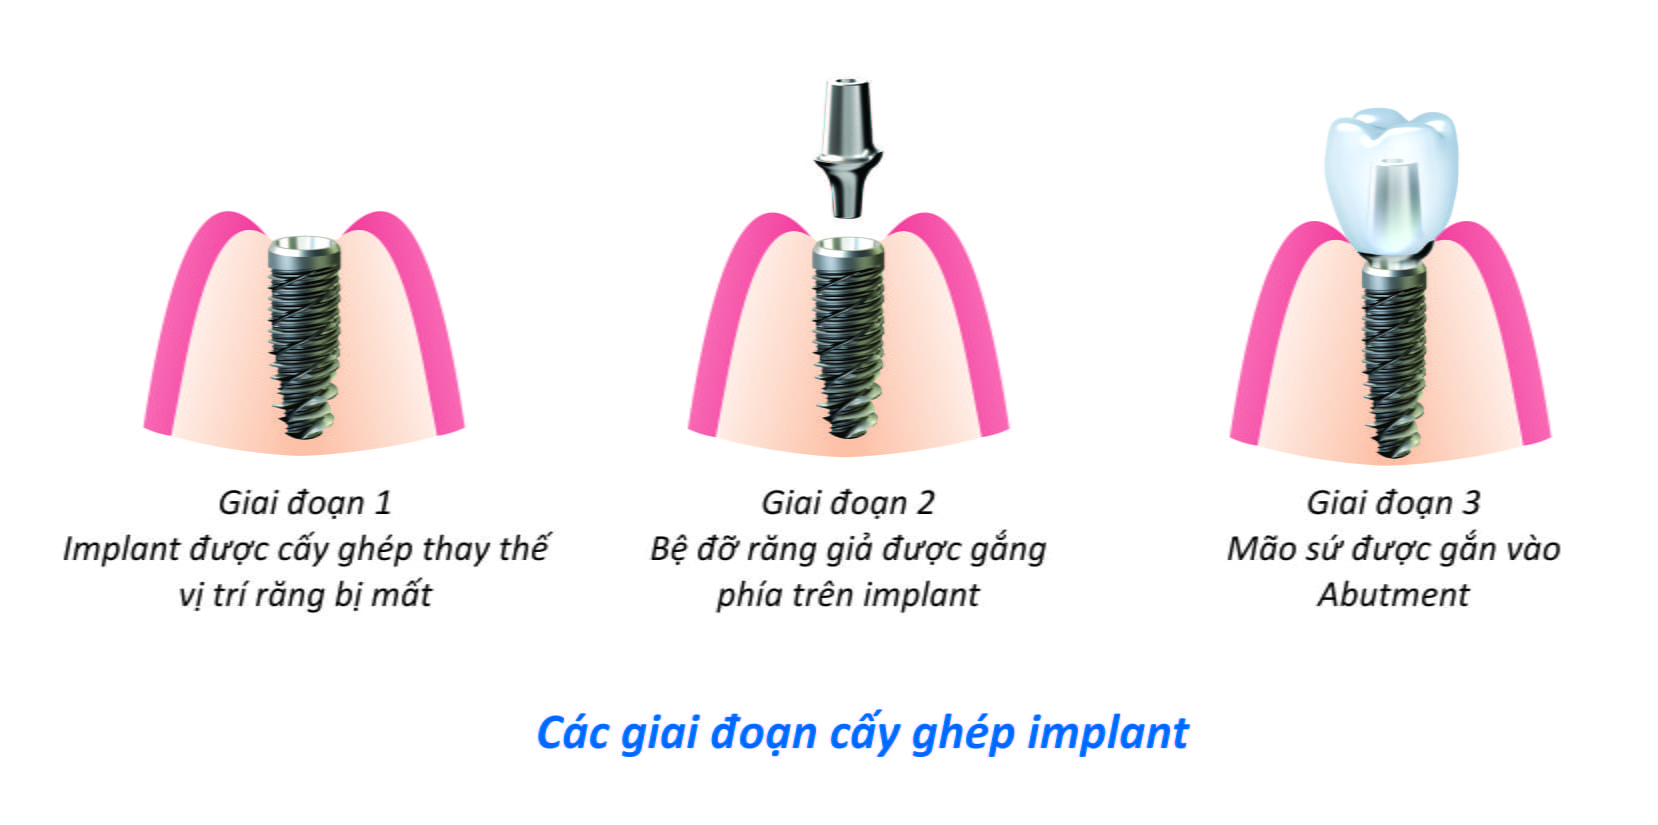 Implant cấy ghép cho những trường hợp nào ?